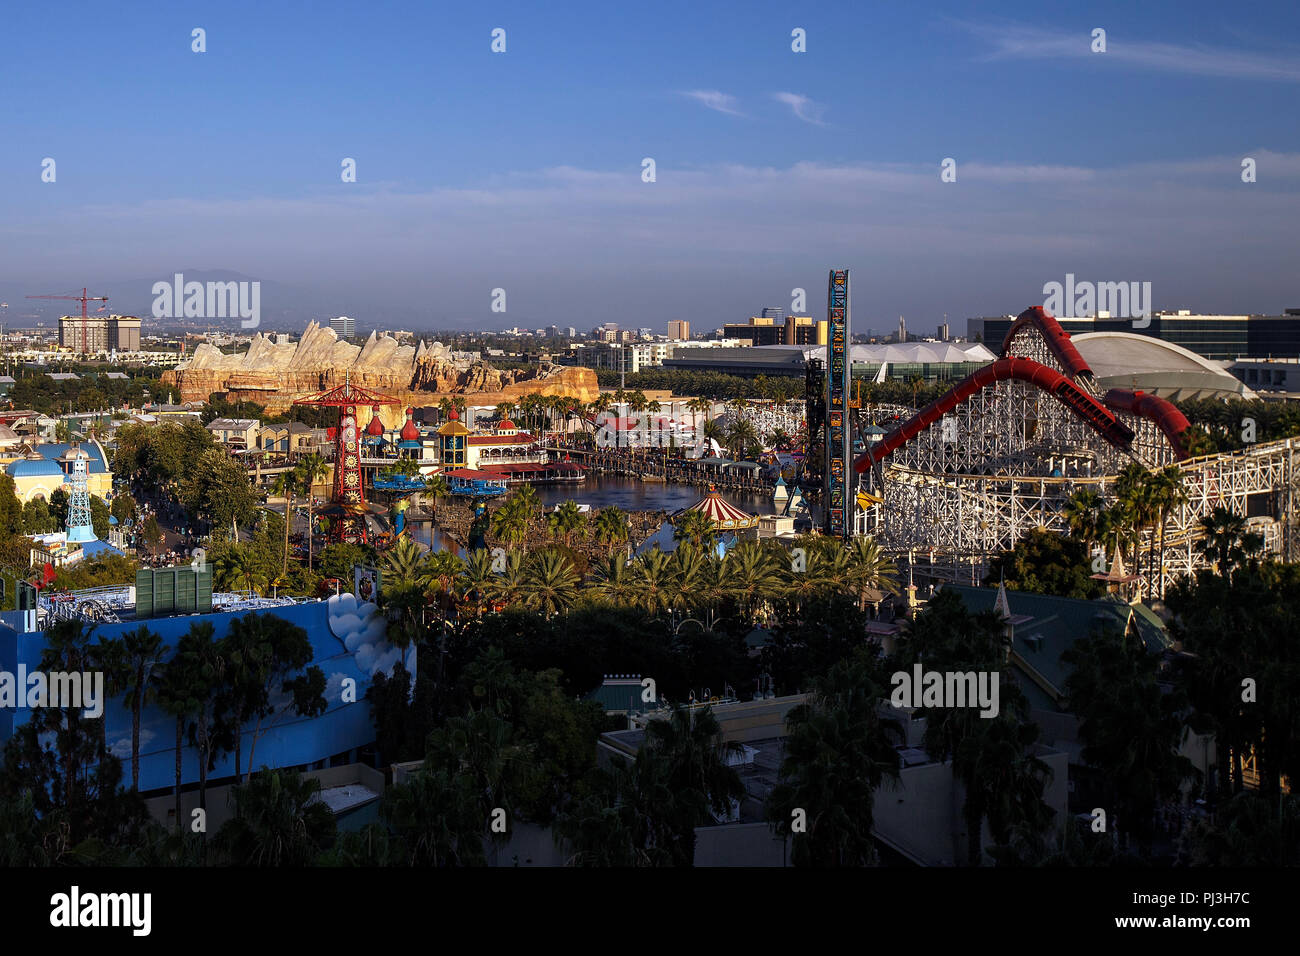 Vue aérienne du parc Disney California Adventure, Parc Disneyland, Anaheim, Californie, États-Unis d'Amérique Banque D'Images